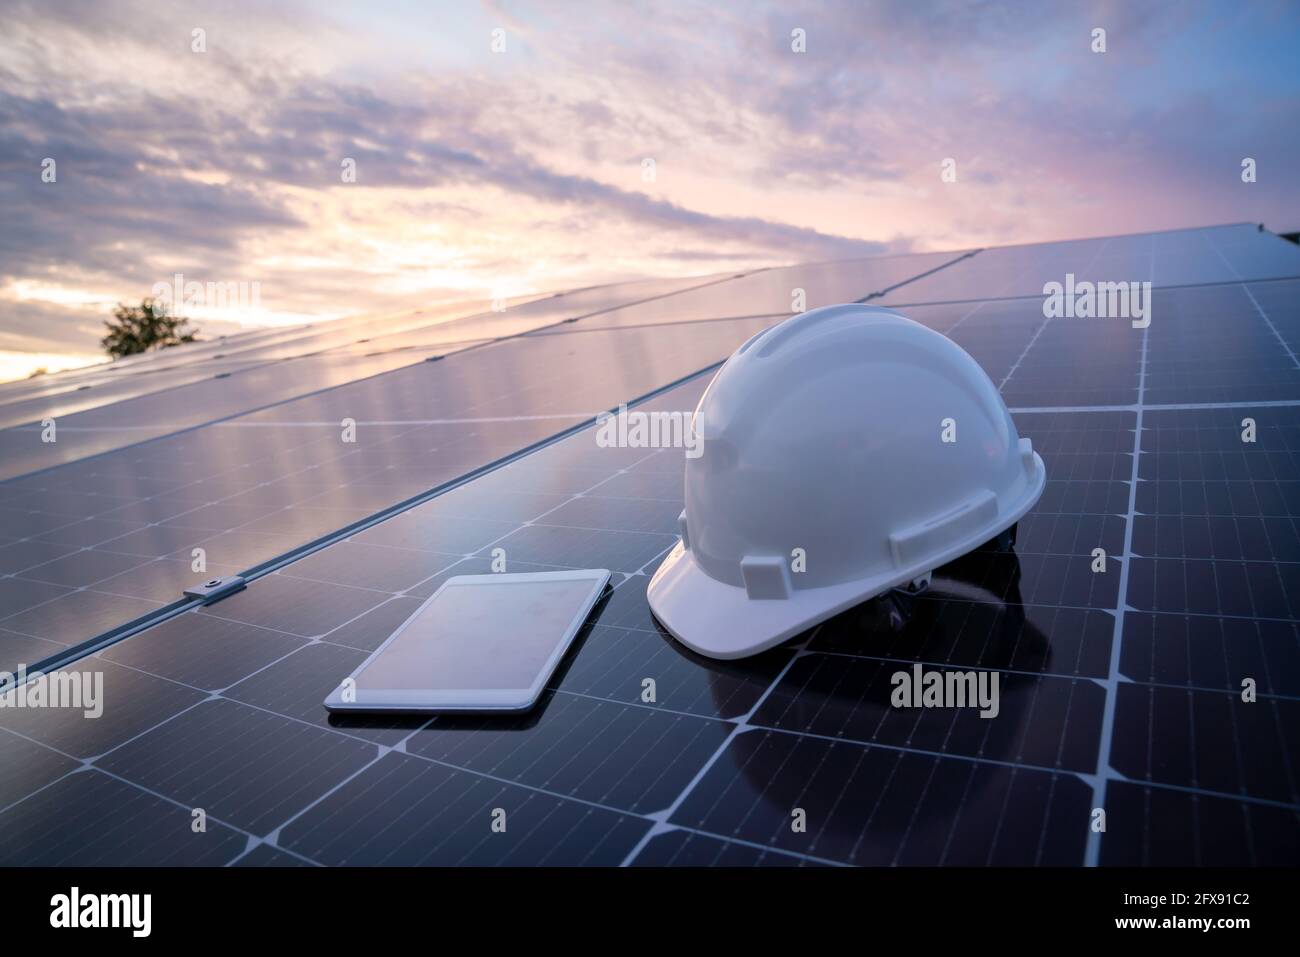 Helm mit Tablet auf dem Solarpanel für die Arbeit Solarstation Photovoltaik-Panels, Wissenschaft Solarenergie, Ingenieur arbeiten an der Überprüfung und Wartung Stockfoto